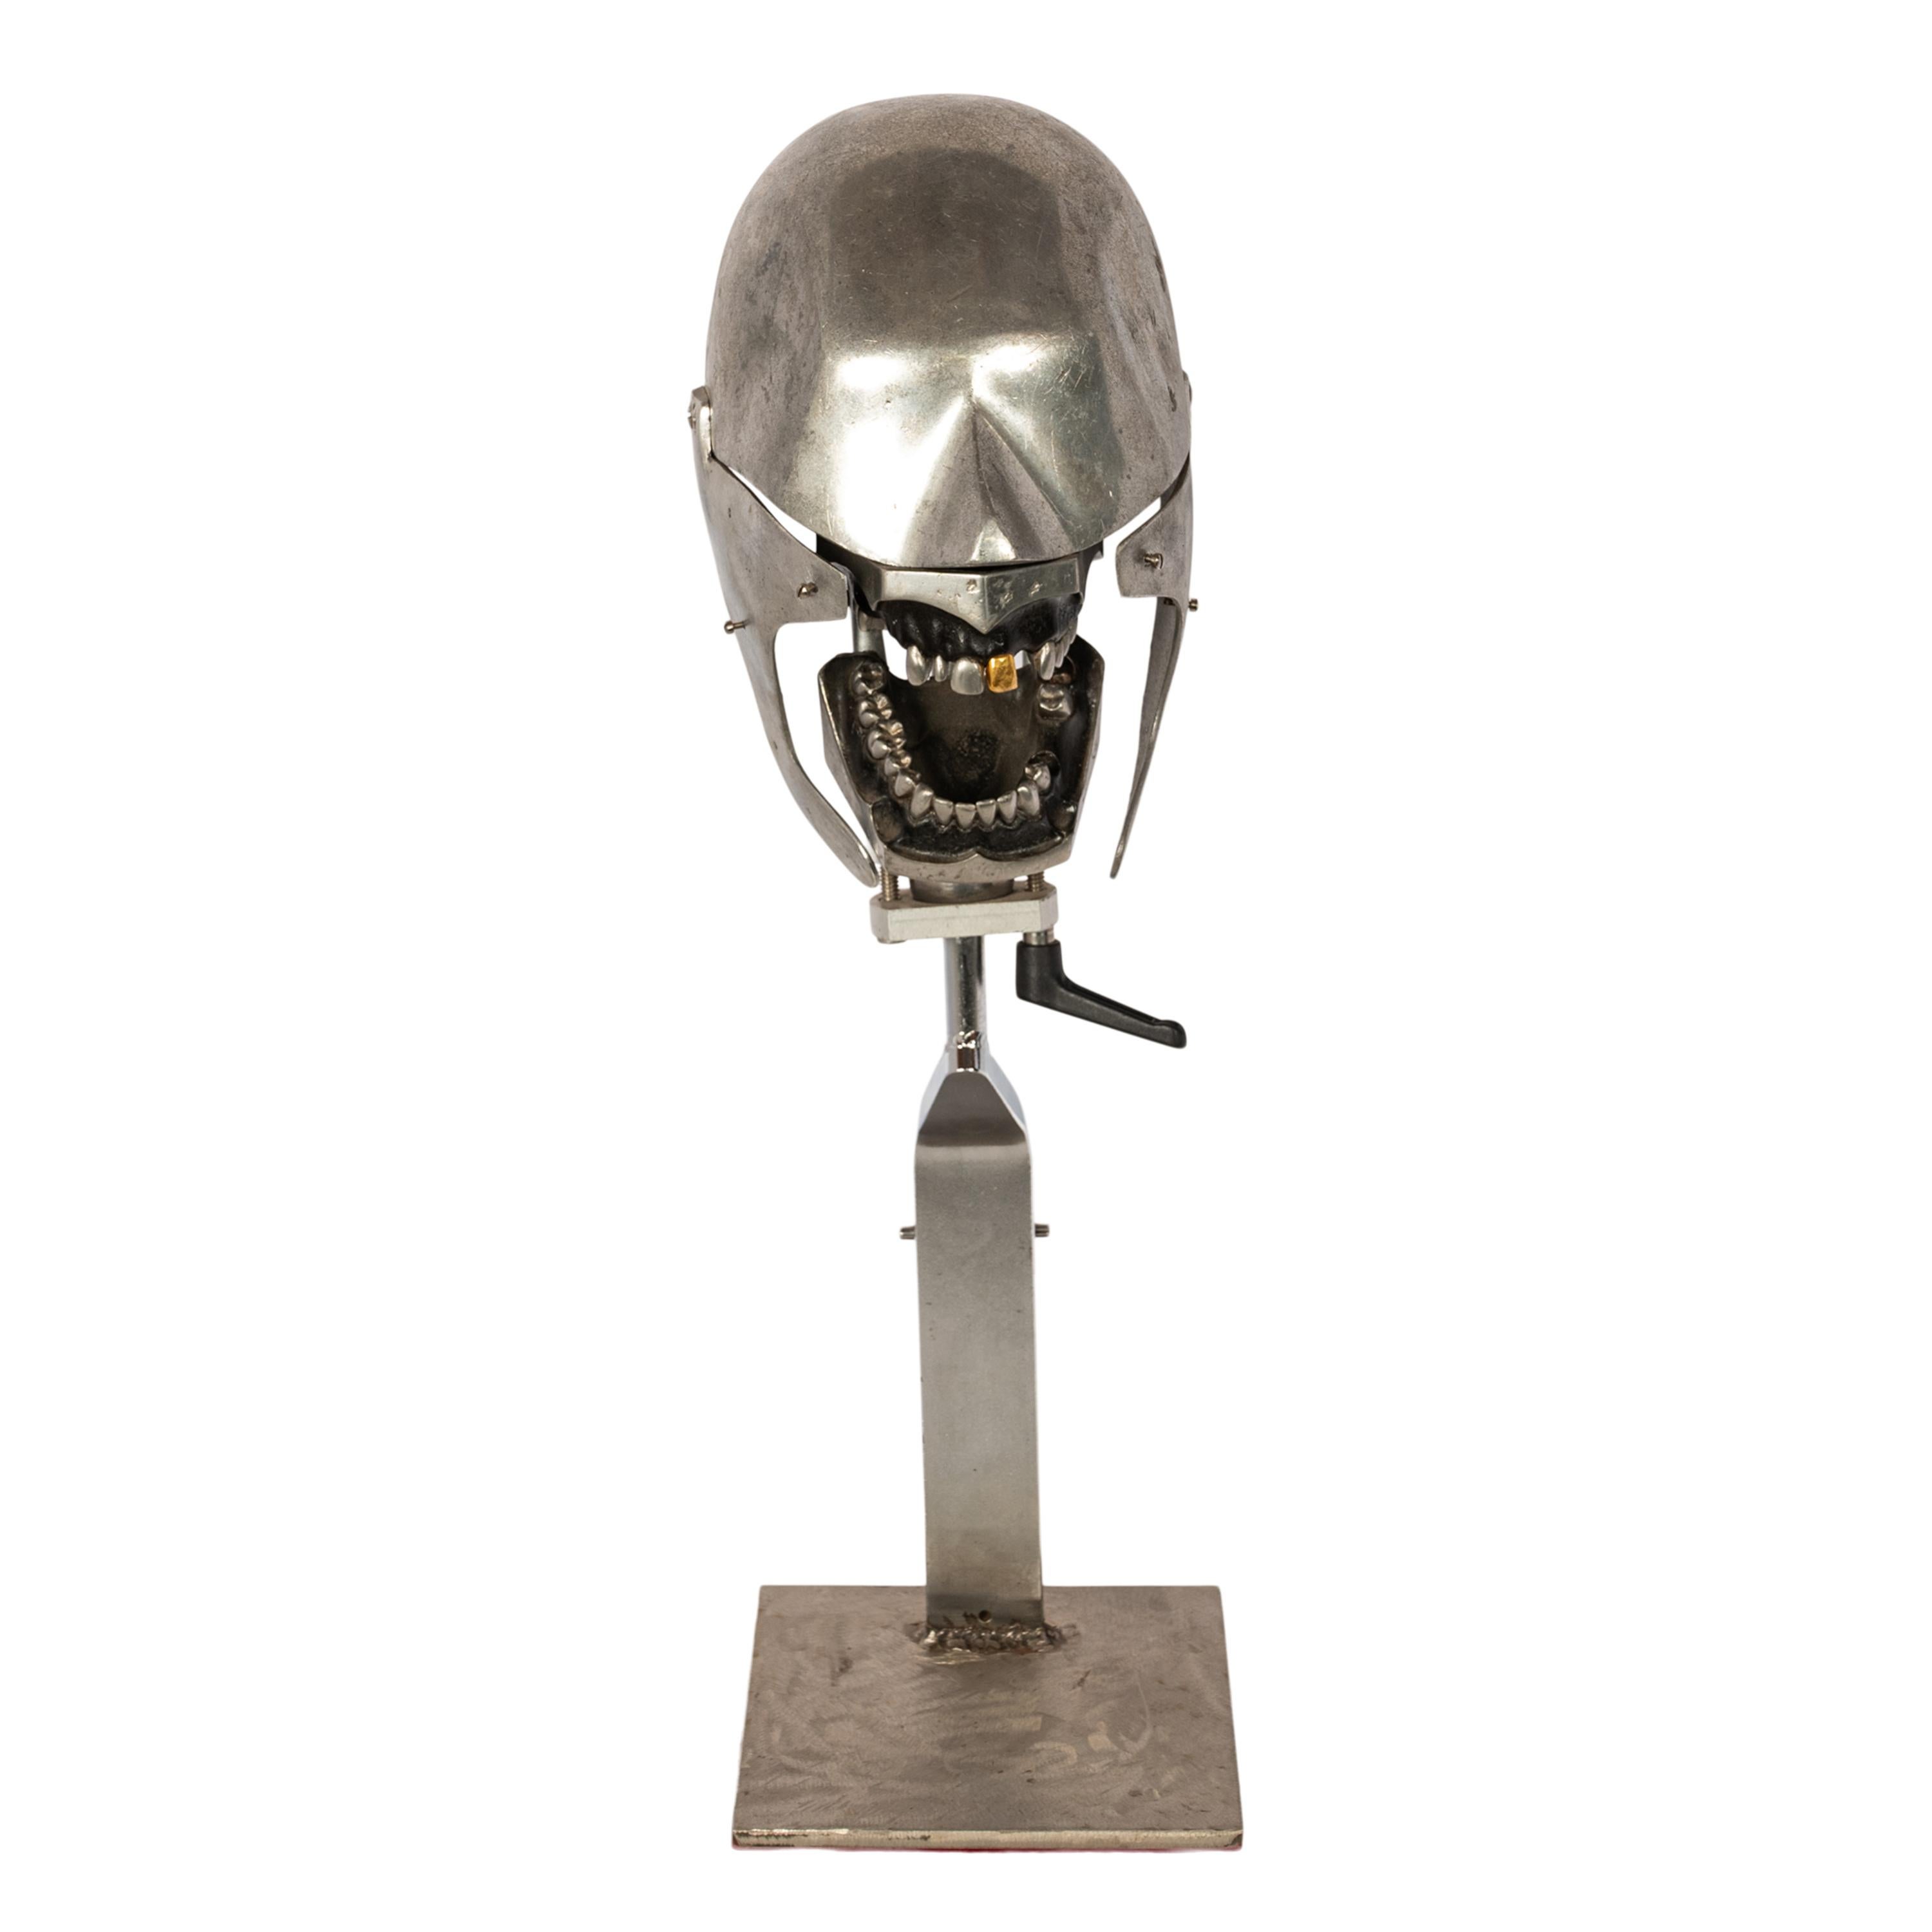 Fantôme dentaire antique en aluminium, modèle de tête d'enseignement avec une dent en or, années 1920.
Un merveilleux fantôme dentaire sculptural amusant, la tête en aluminium avec la mâchoire inférieure et la mâchoire supérieure, une des incisives